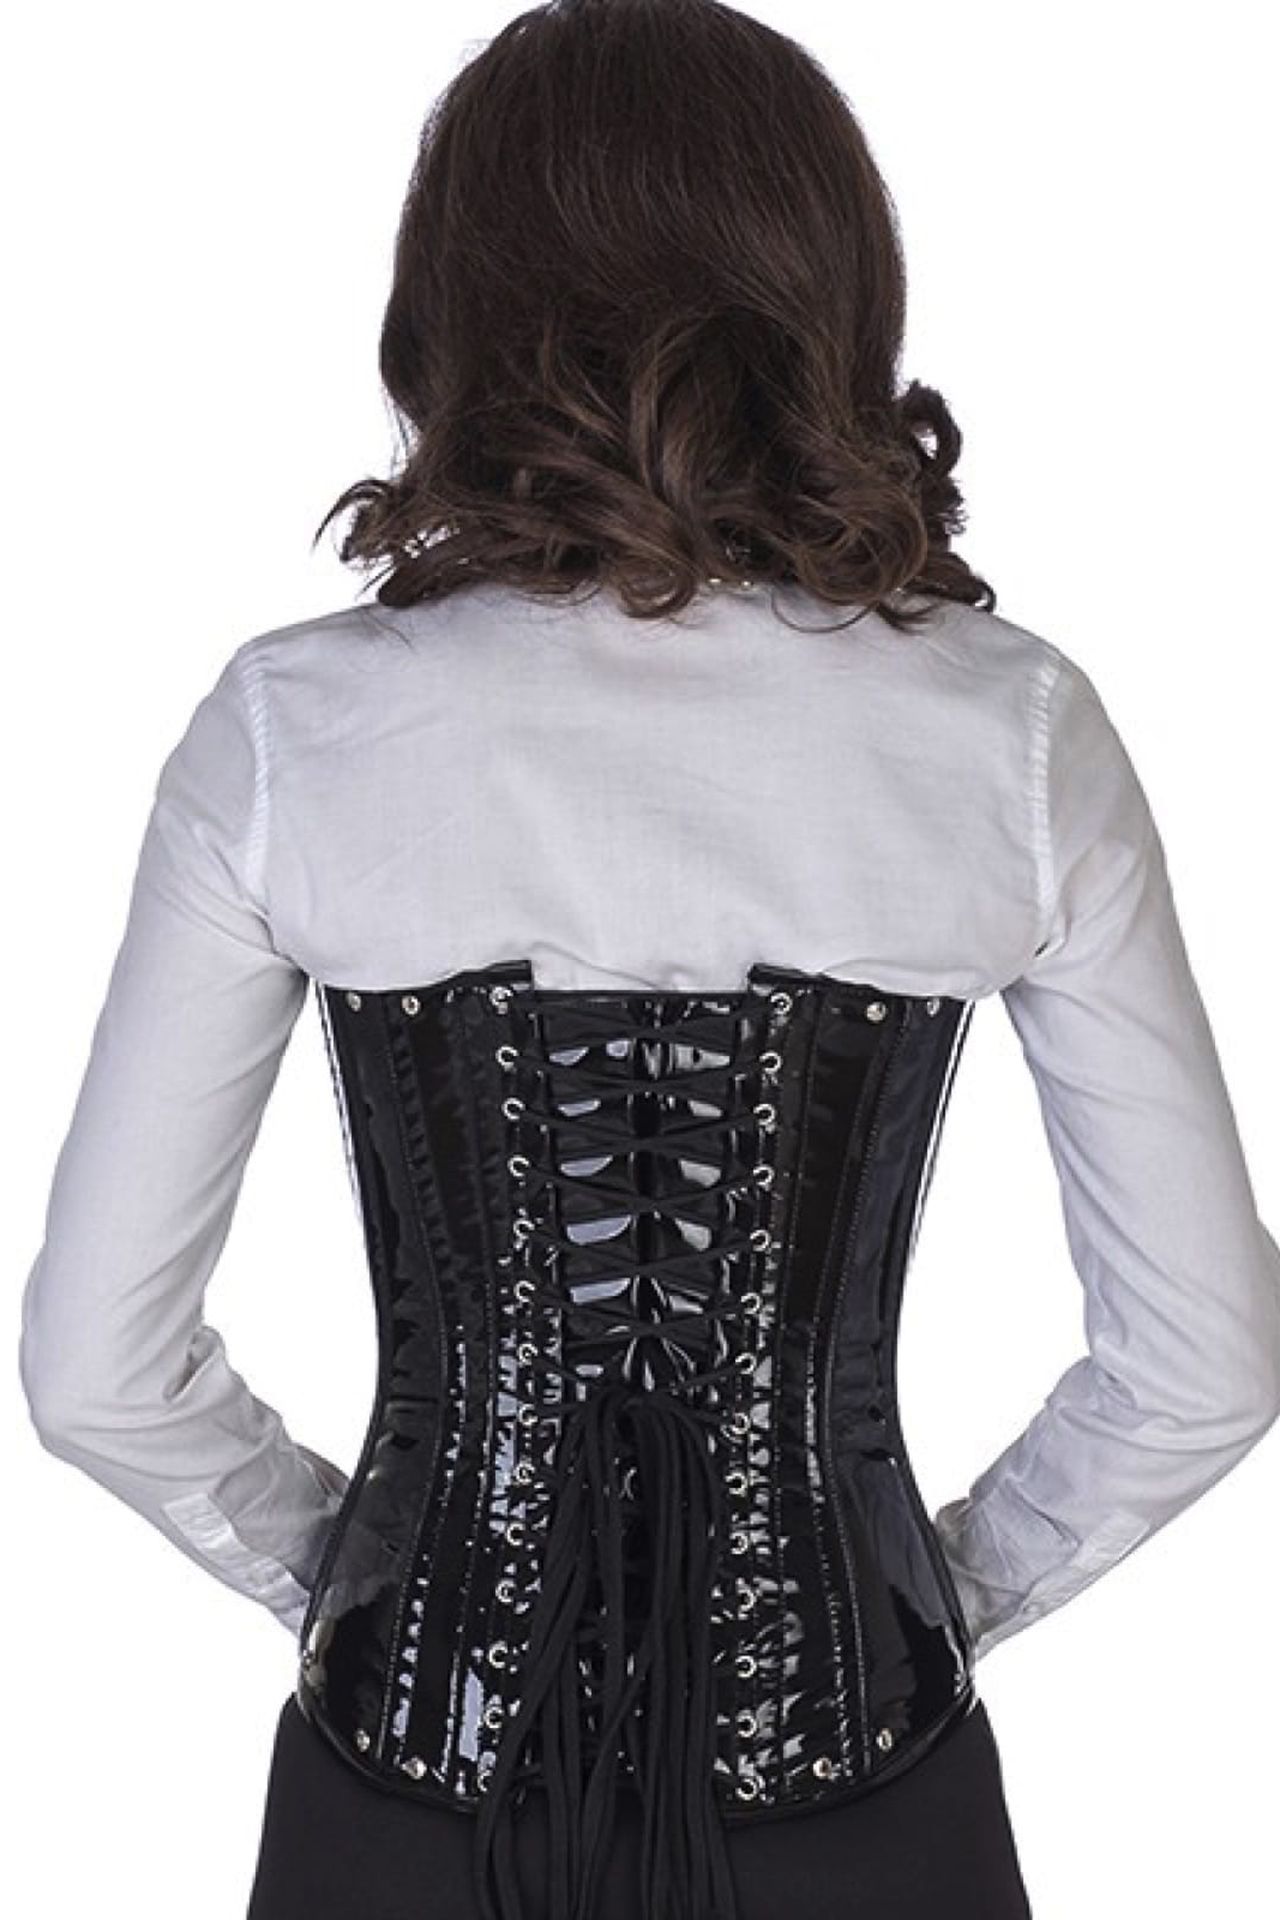 Lak corset zwart onderborst neckholder met studs en gespen Korset po70